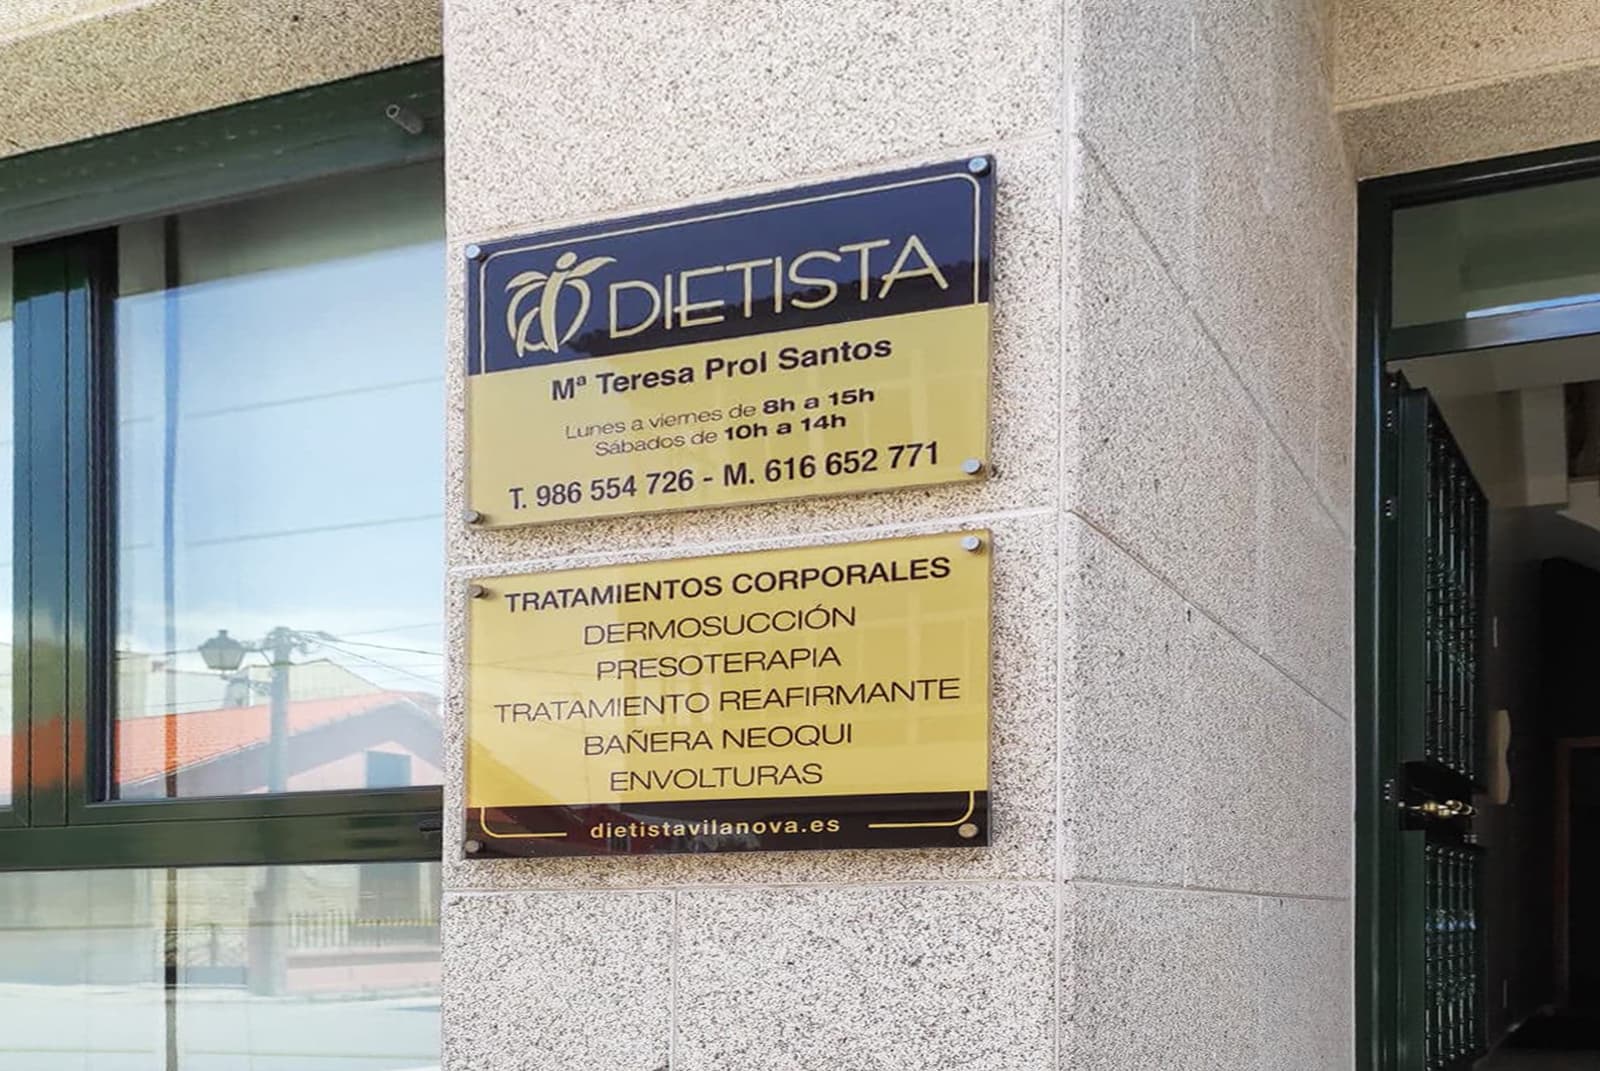 Dietista Vilanova